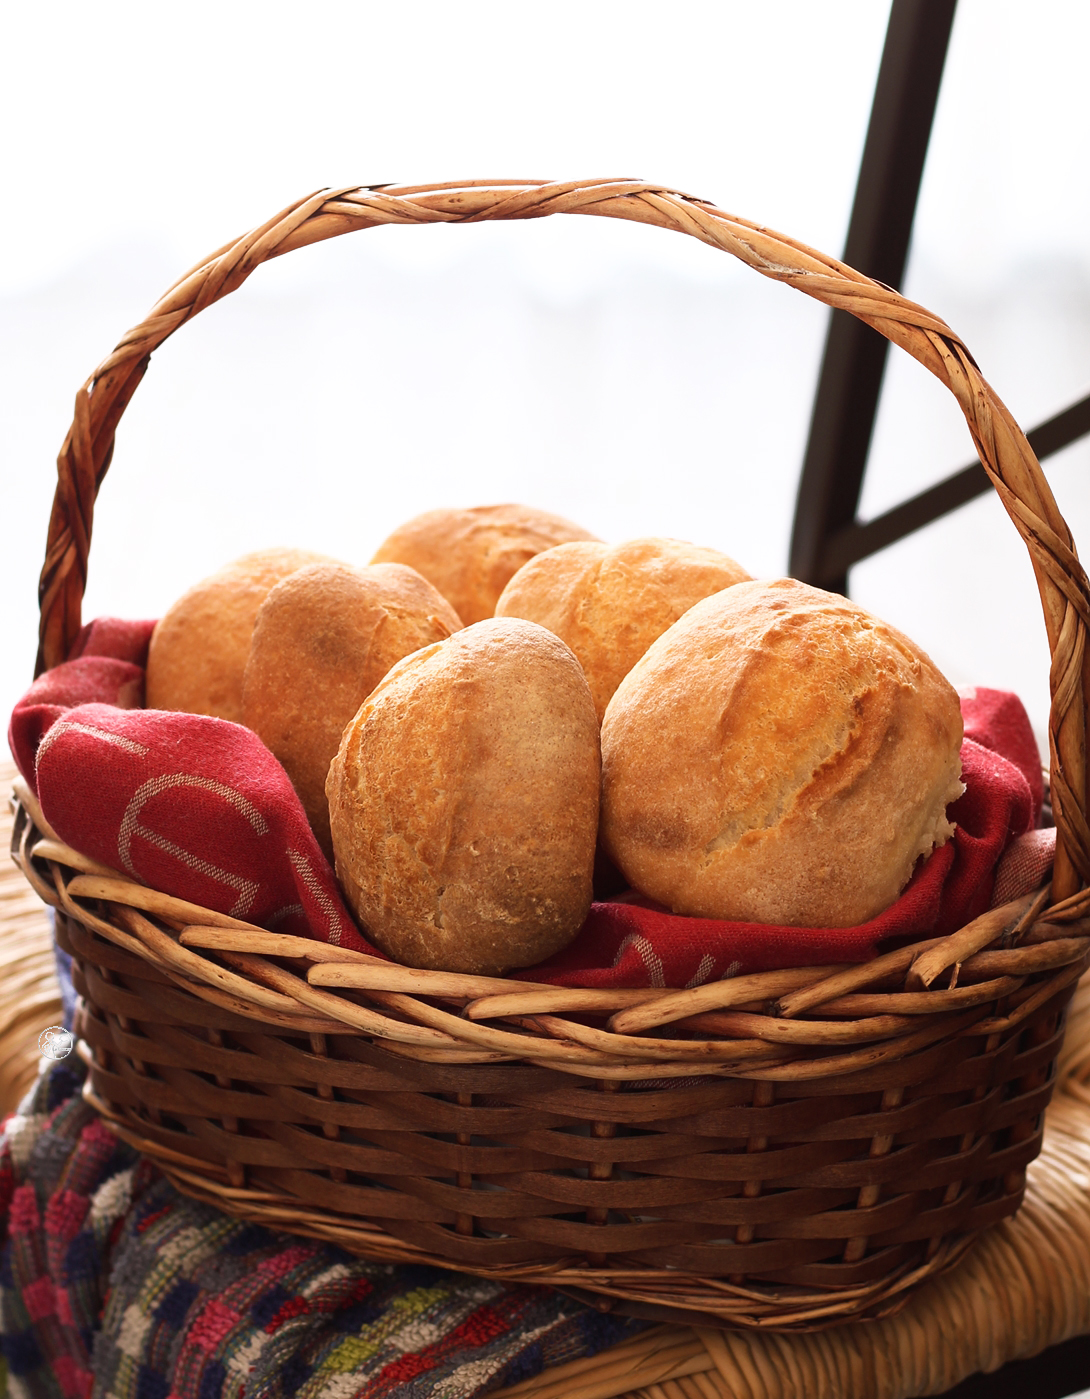 Petits pains sans gluten au levain et avec farine de lentilles - La Cassata Celiaca